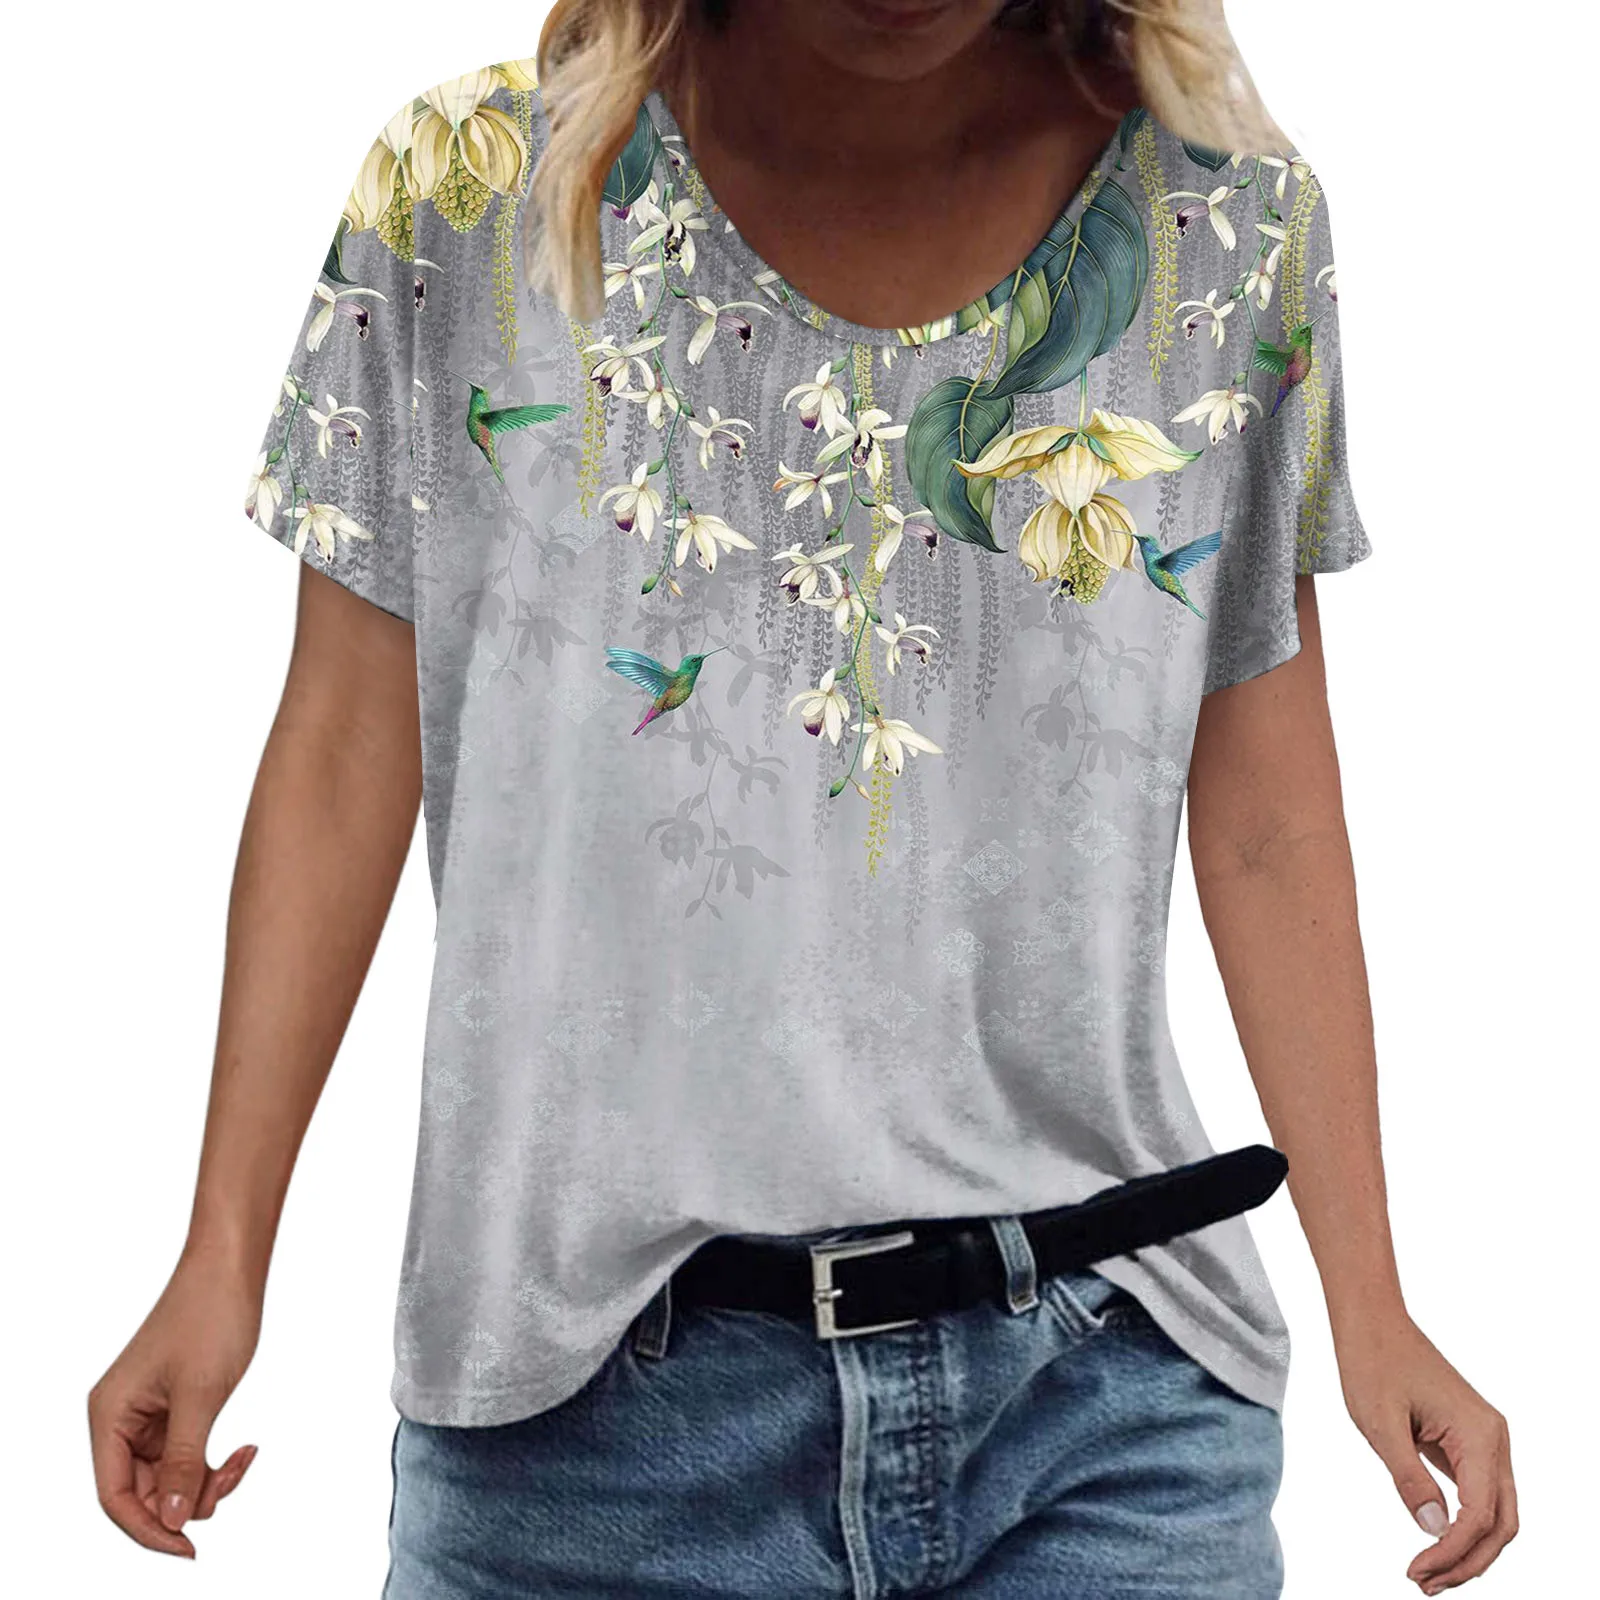 Moda das Mulheres de Verão T-shirt Impresso Manga Curta O Pescoço Camisa Casual Tee Tops Ropa Mujer Verano 2022 Vetement Femme Imagem 4